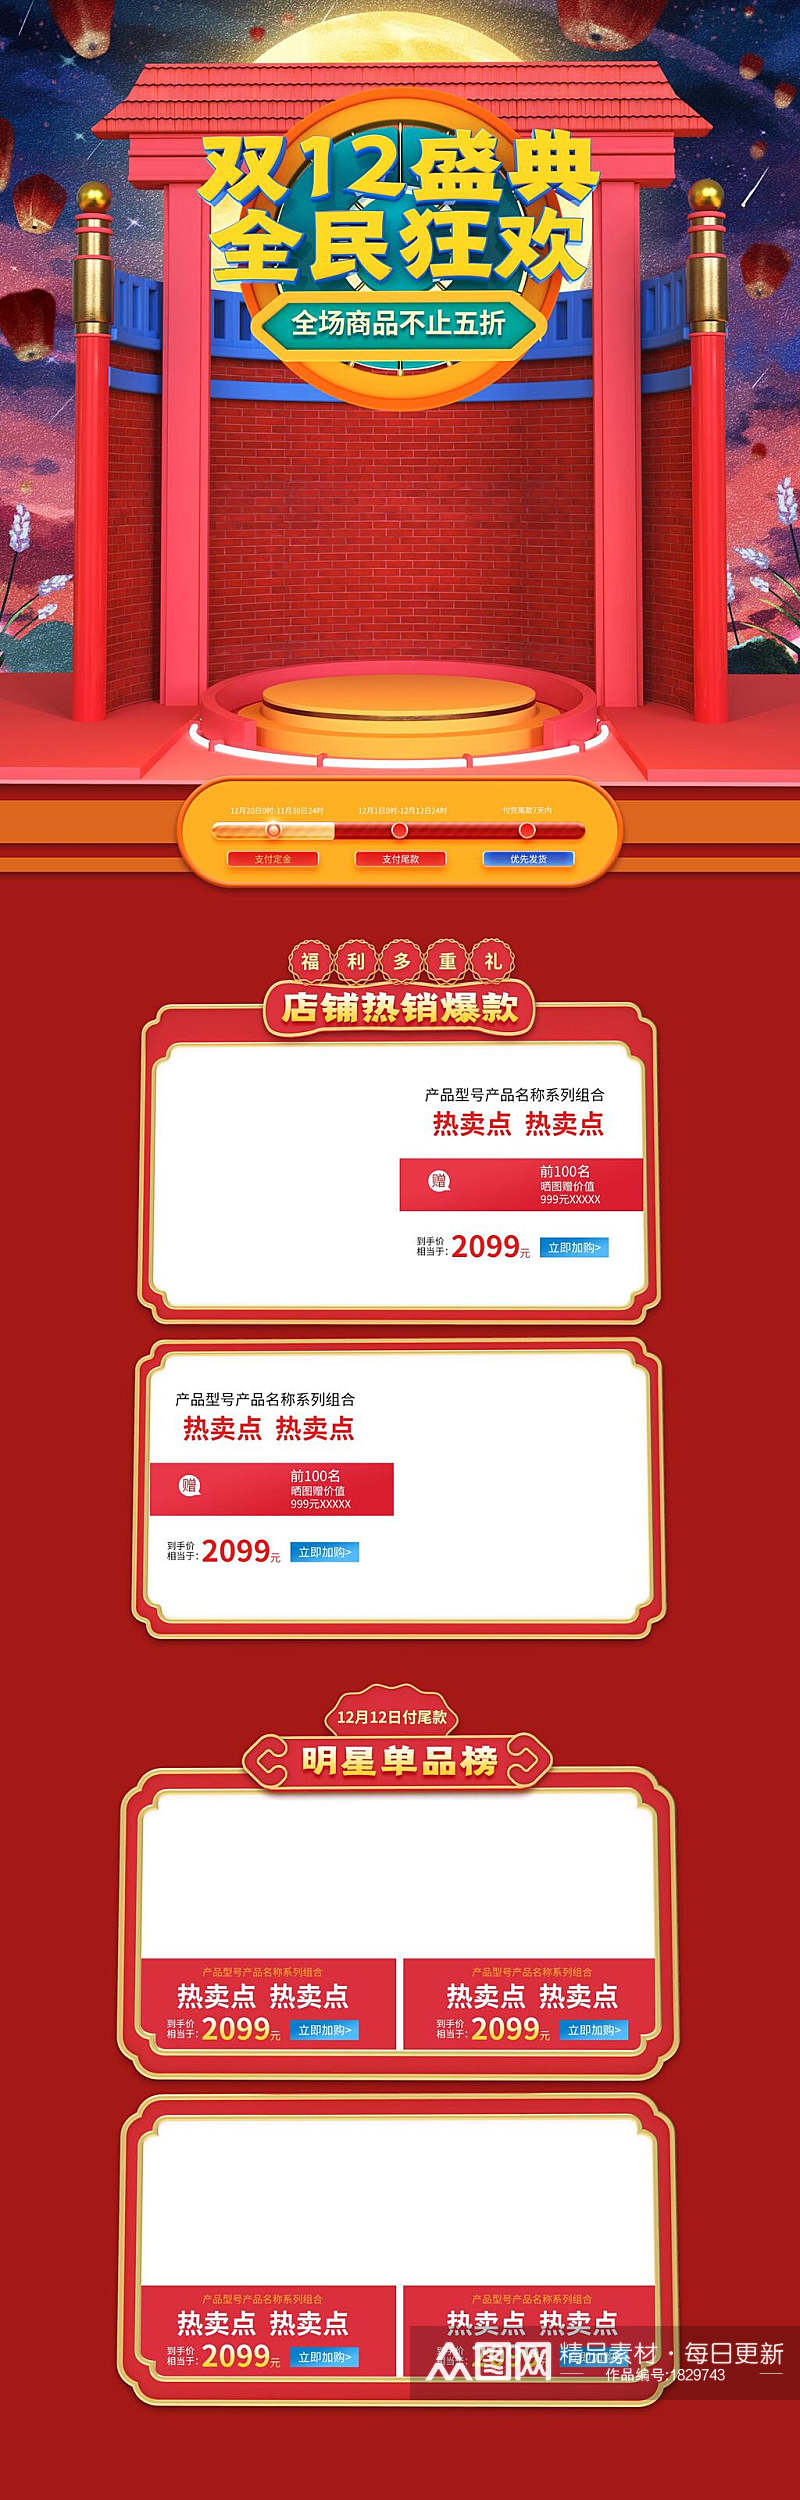 中式双十二盛典全民狂欢电商详情页面设计素材